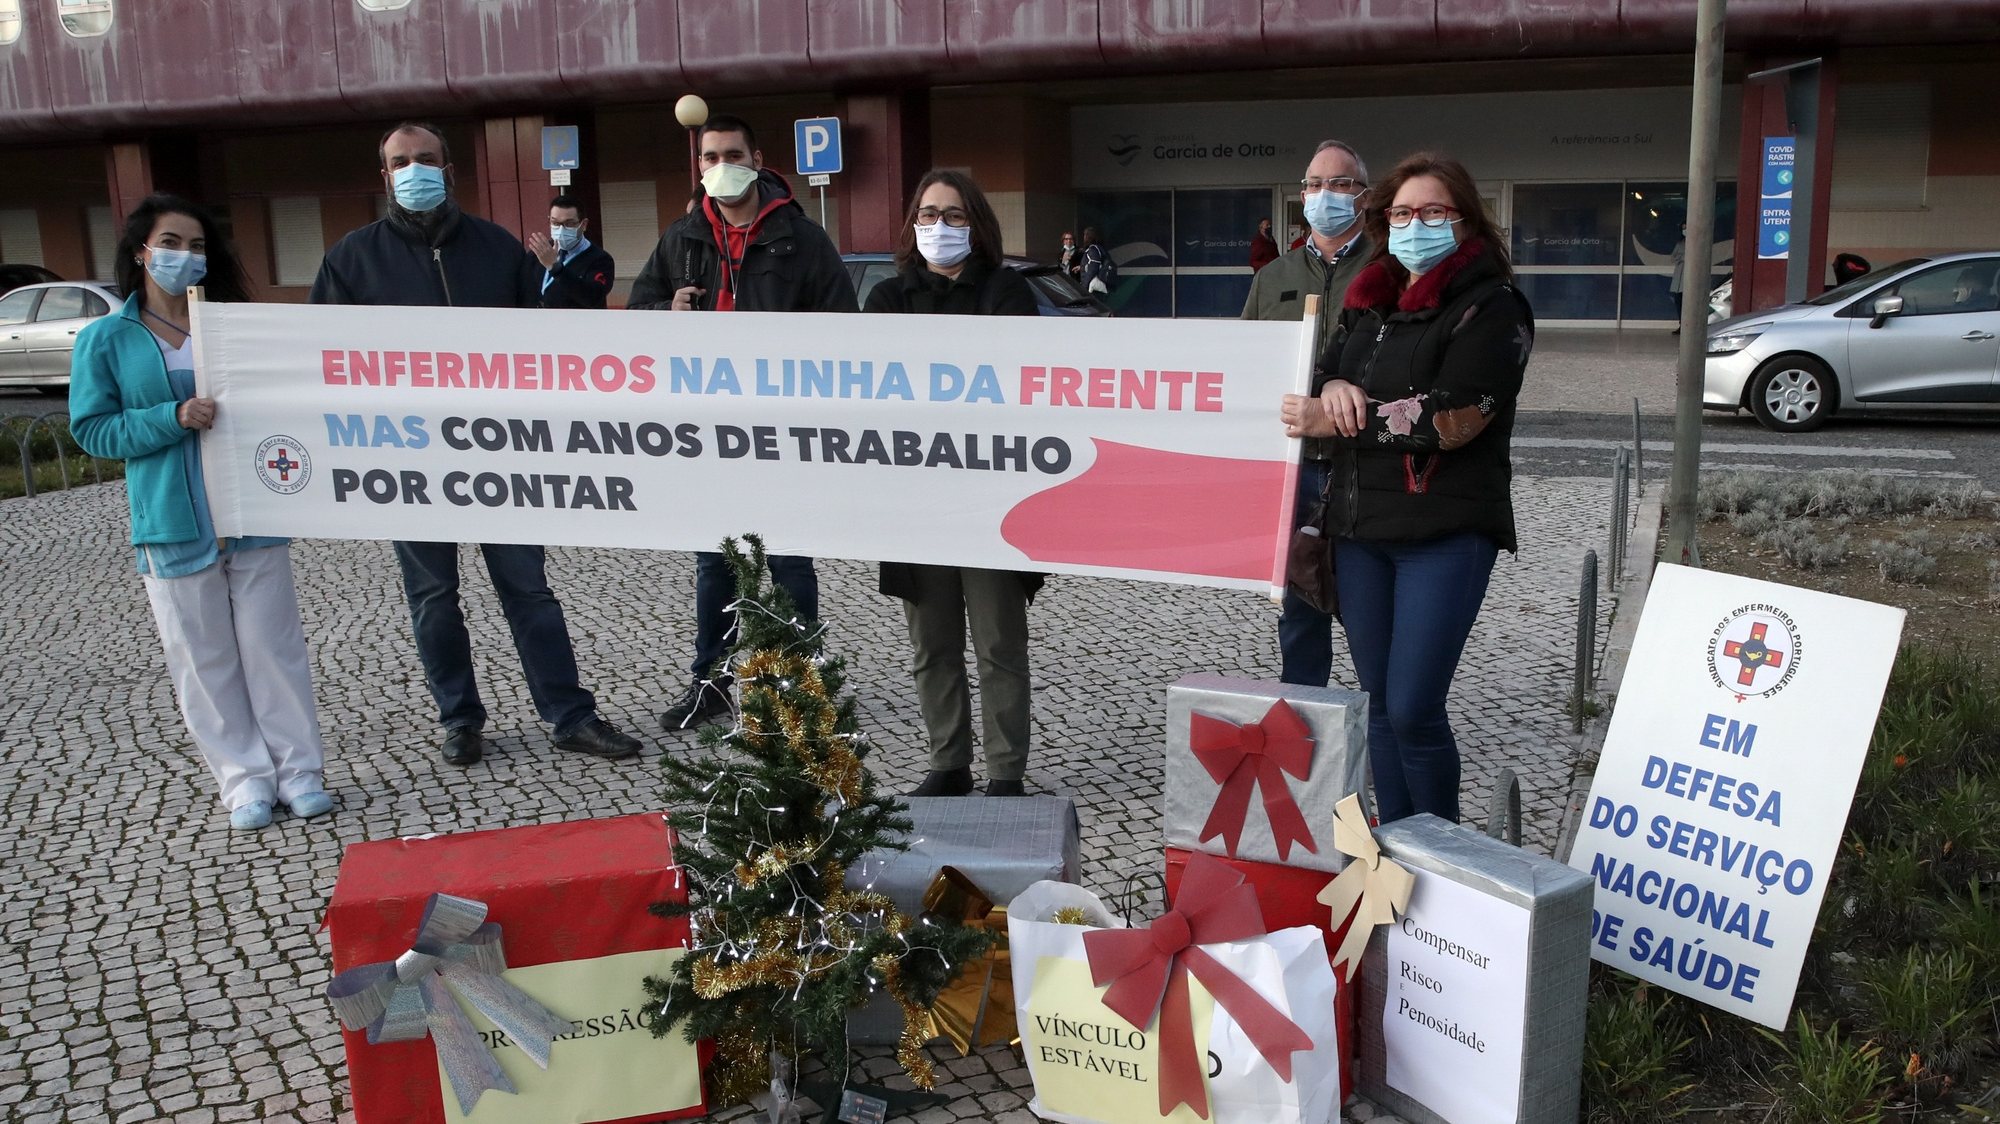 Concentração de enfermeiros do hospital Garcia de Orta, organizada pelo Sindicato dos Enfermeiros Portugueses (SEP), em protesto contra as más condições de trabalho, Almada, 24 de dezembro de 2020. MANUEL DE ALMEIDA/LUSA